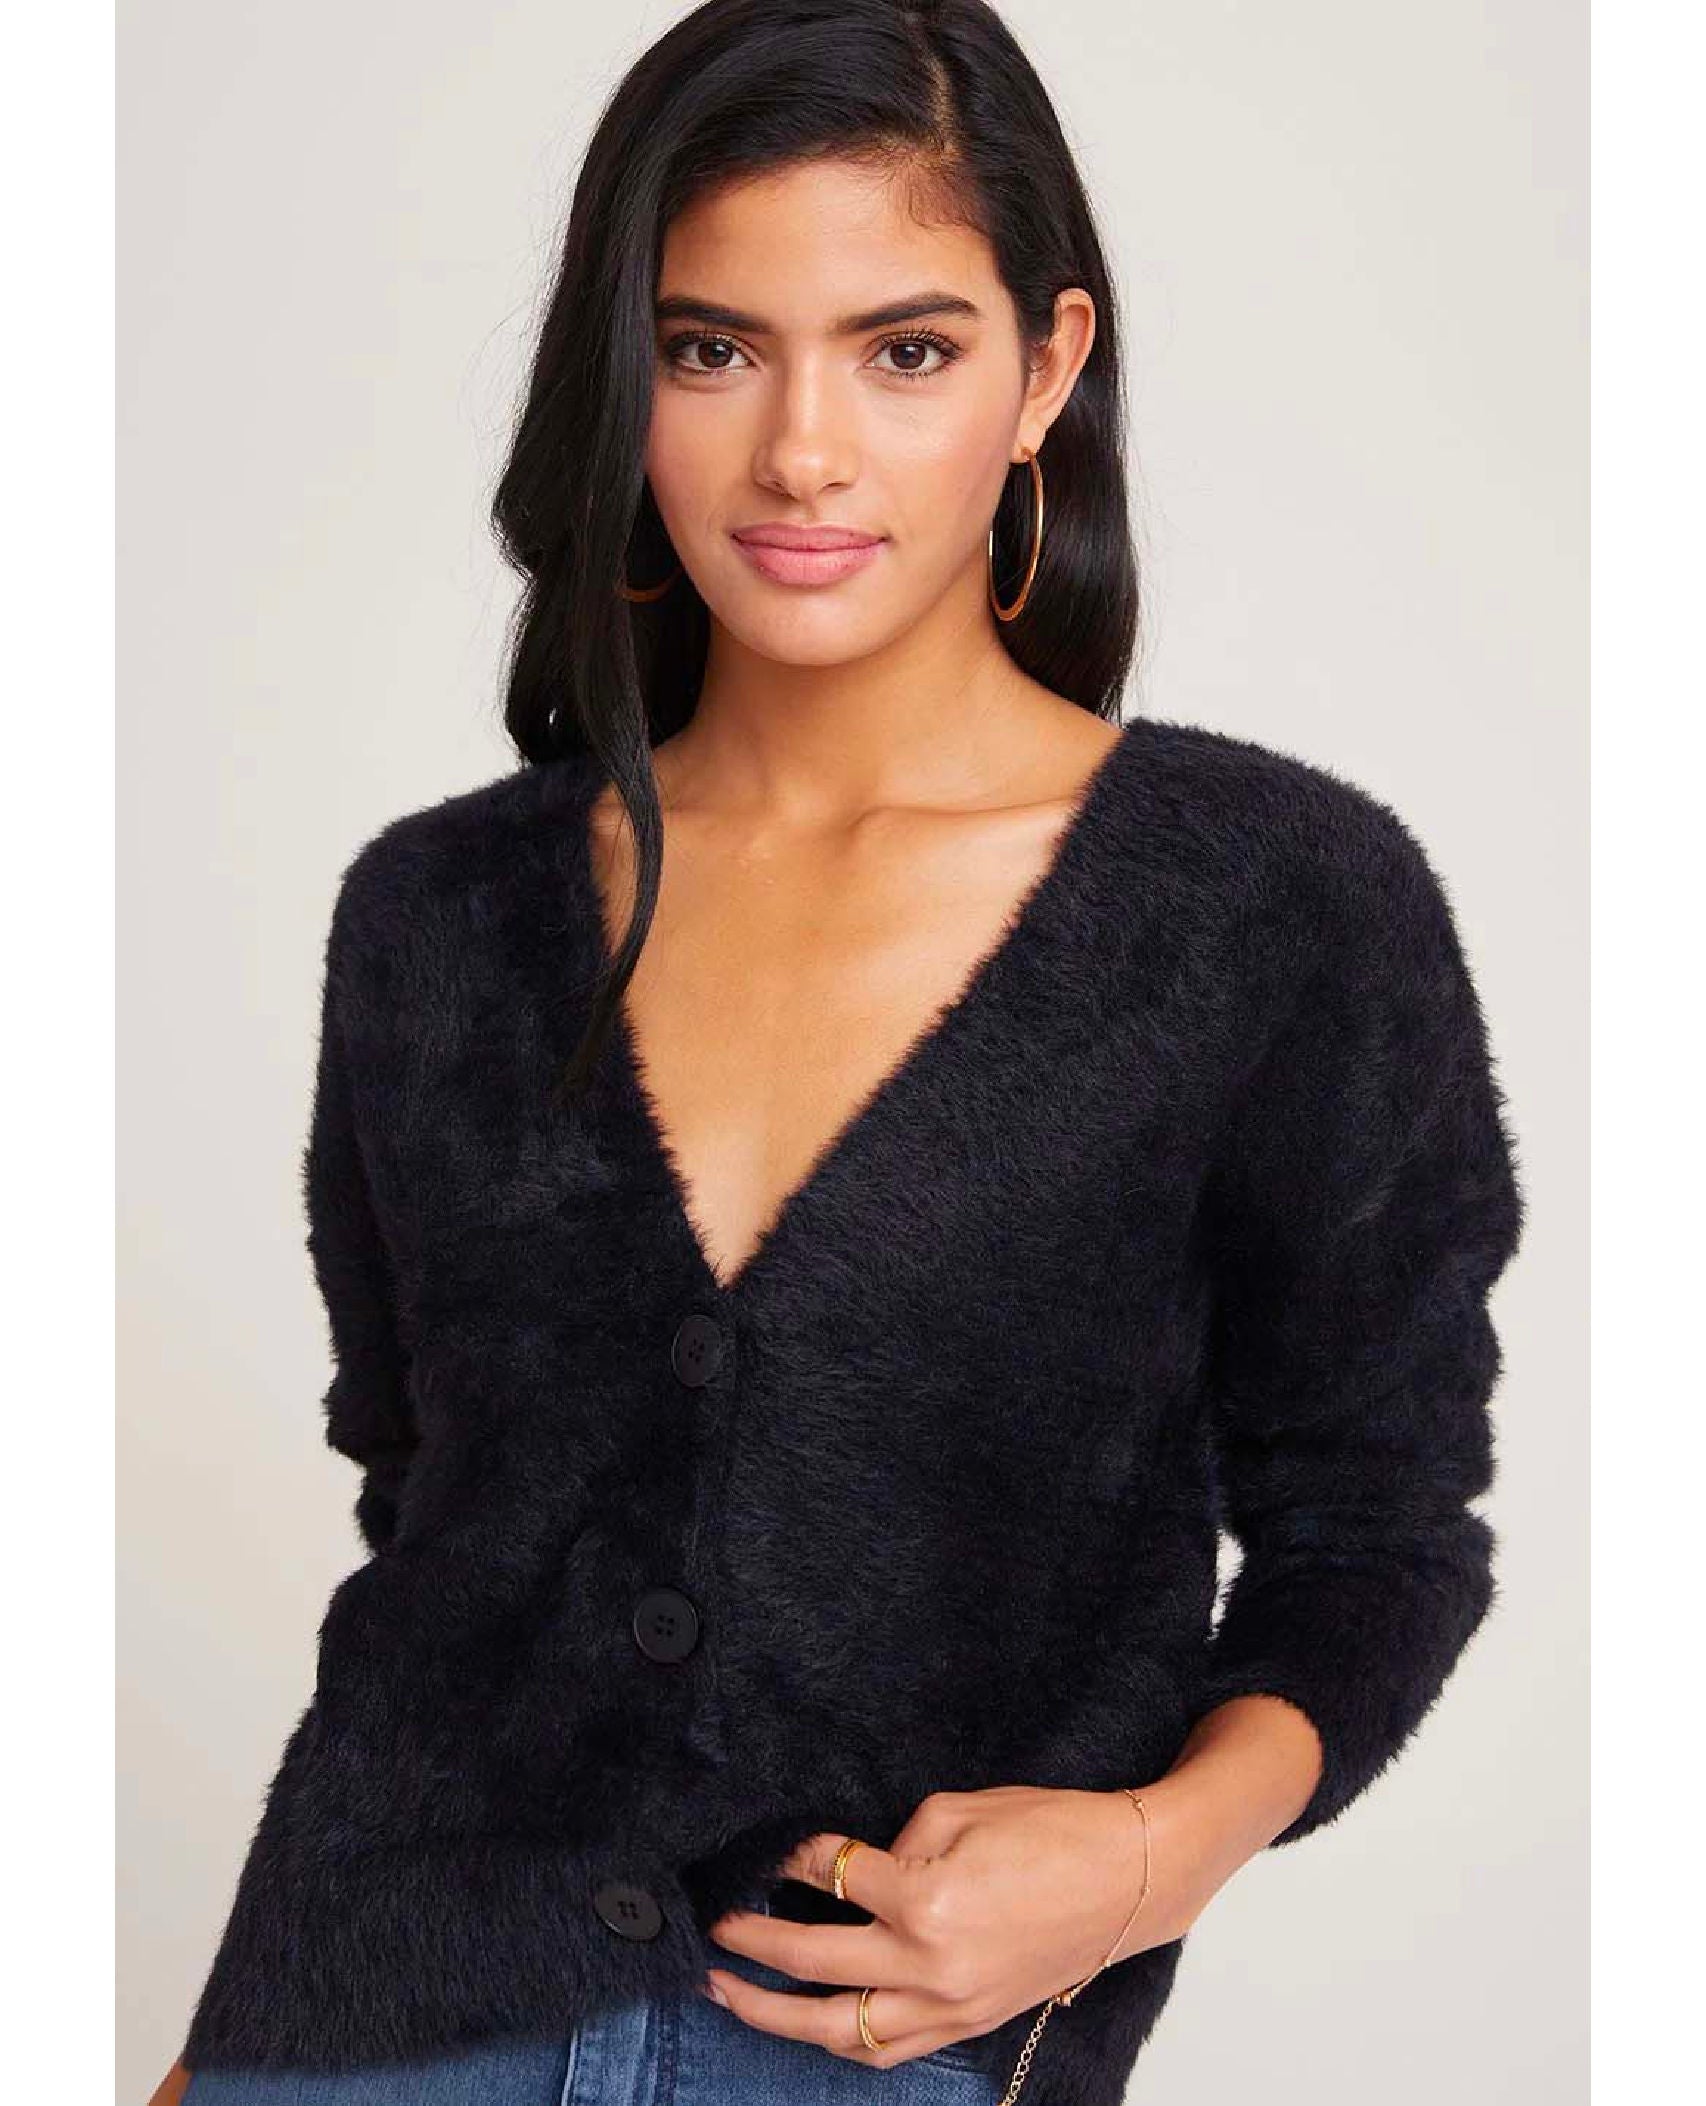 Fuzzy Cardigan Sweater Black